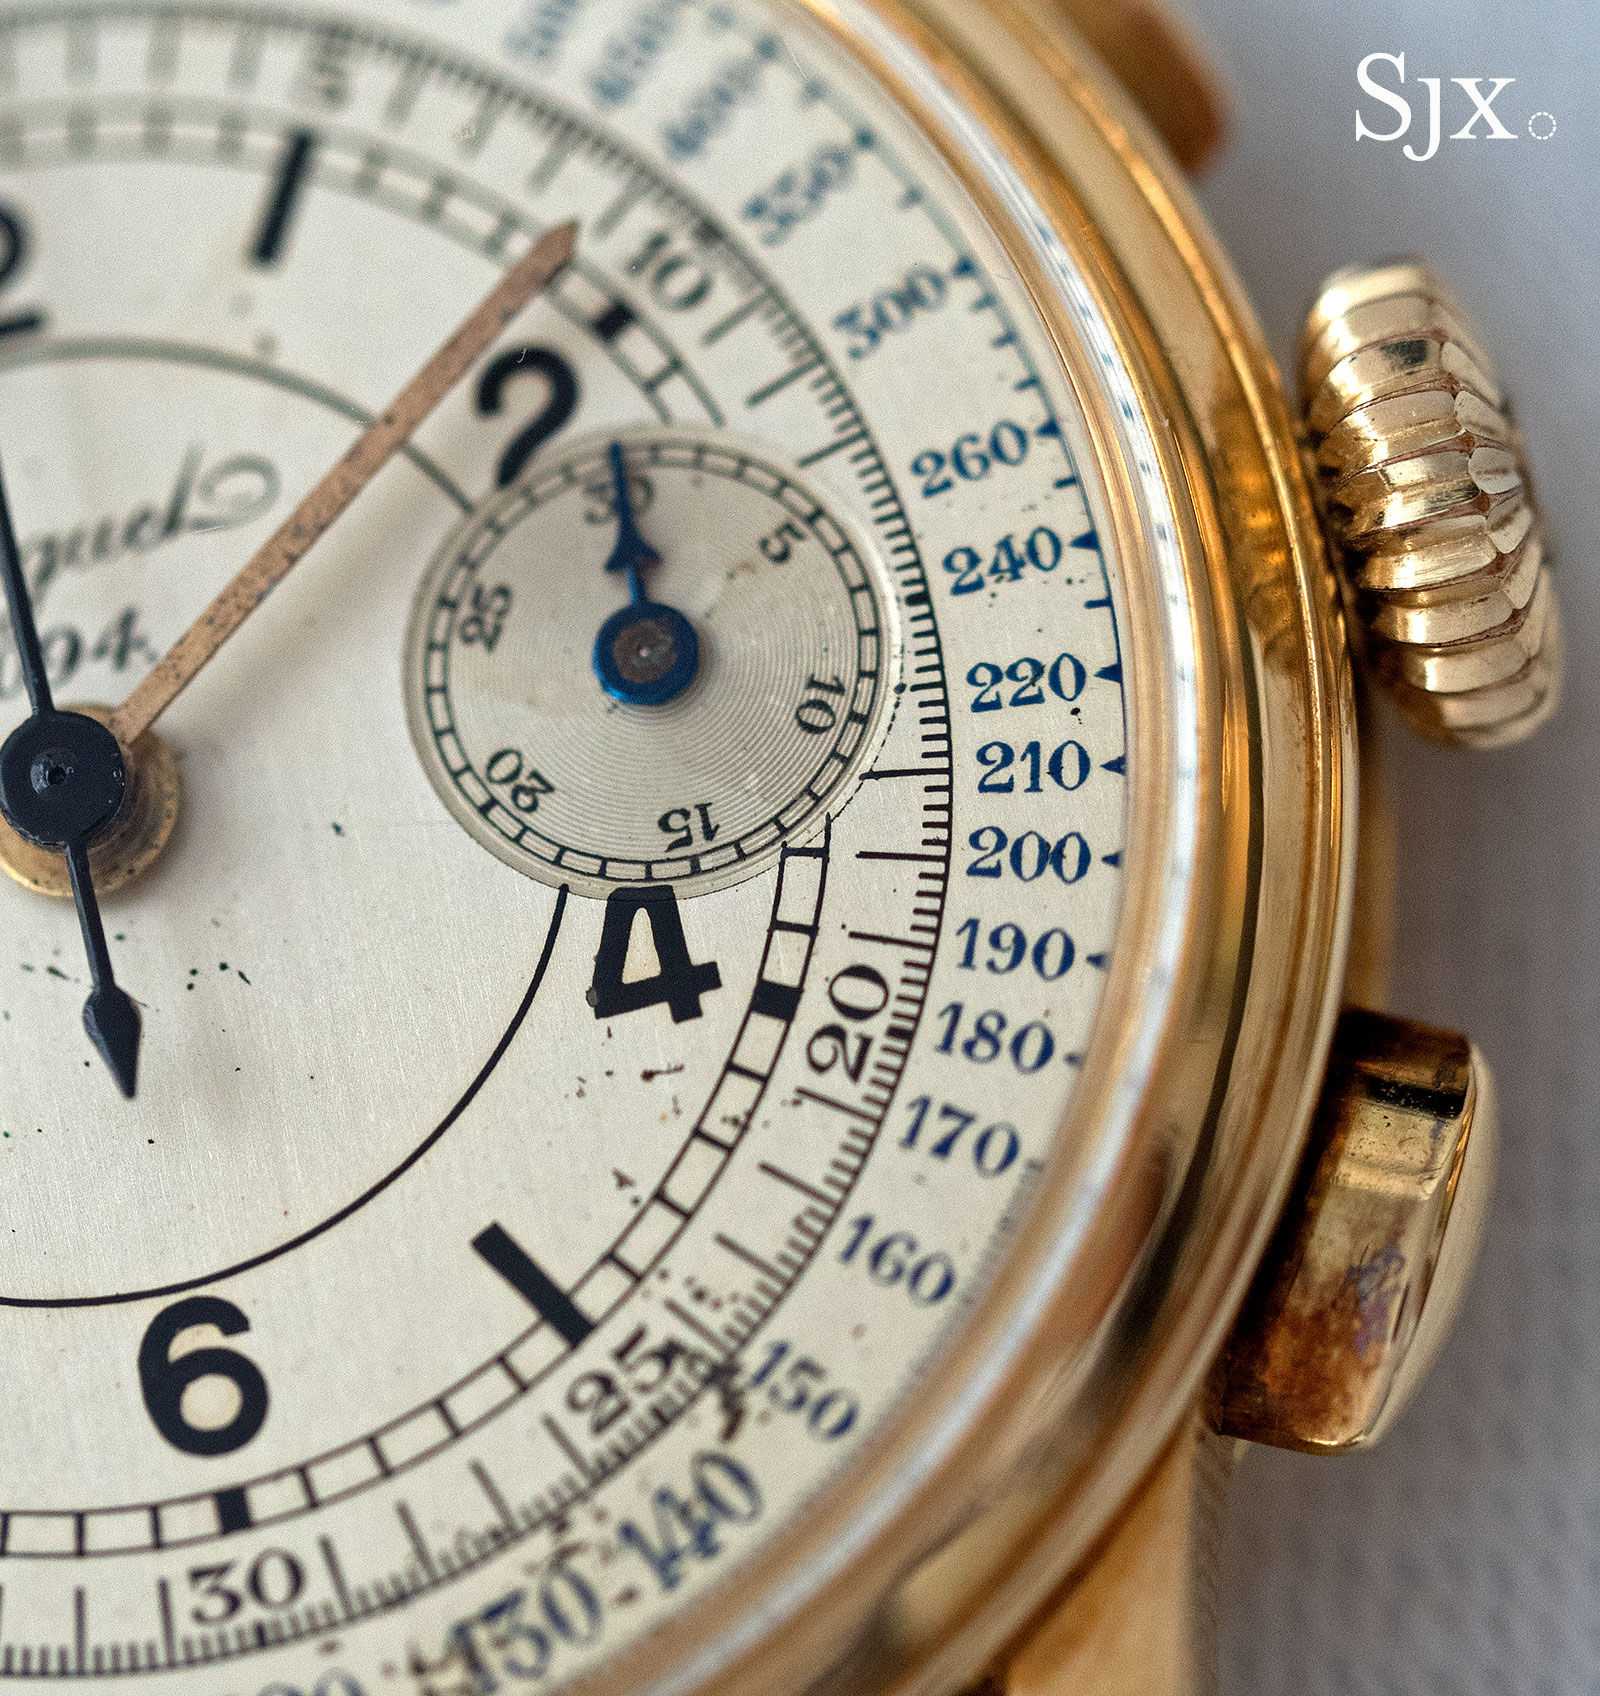 Breguet chronograph sector dial 4